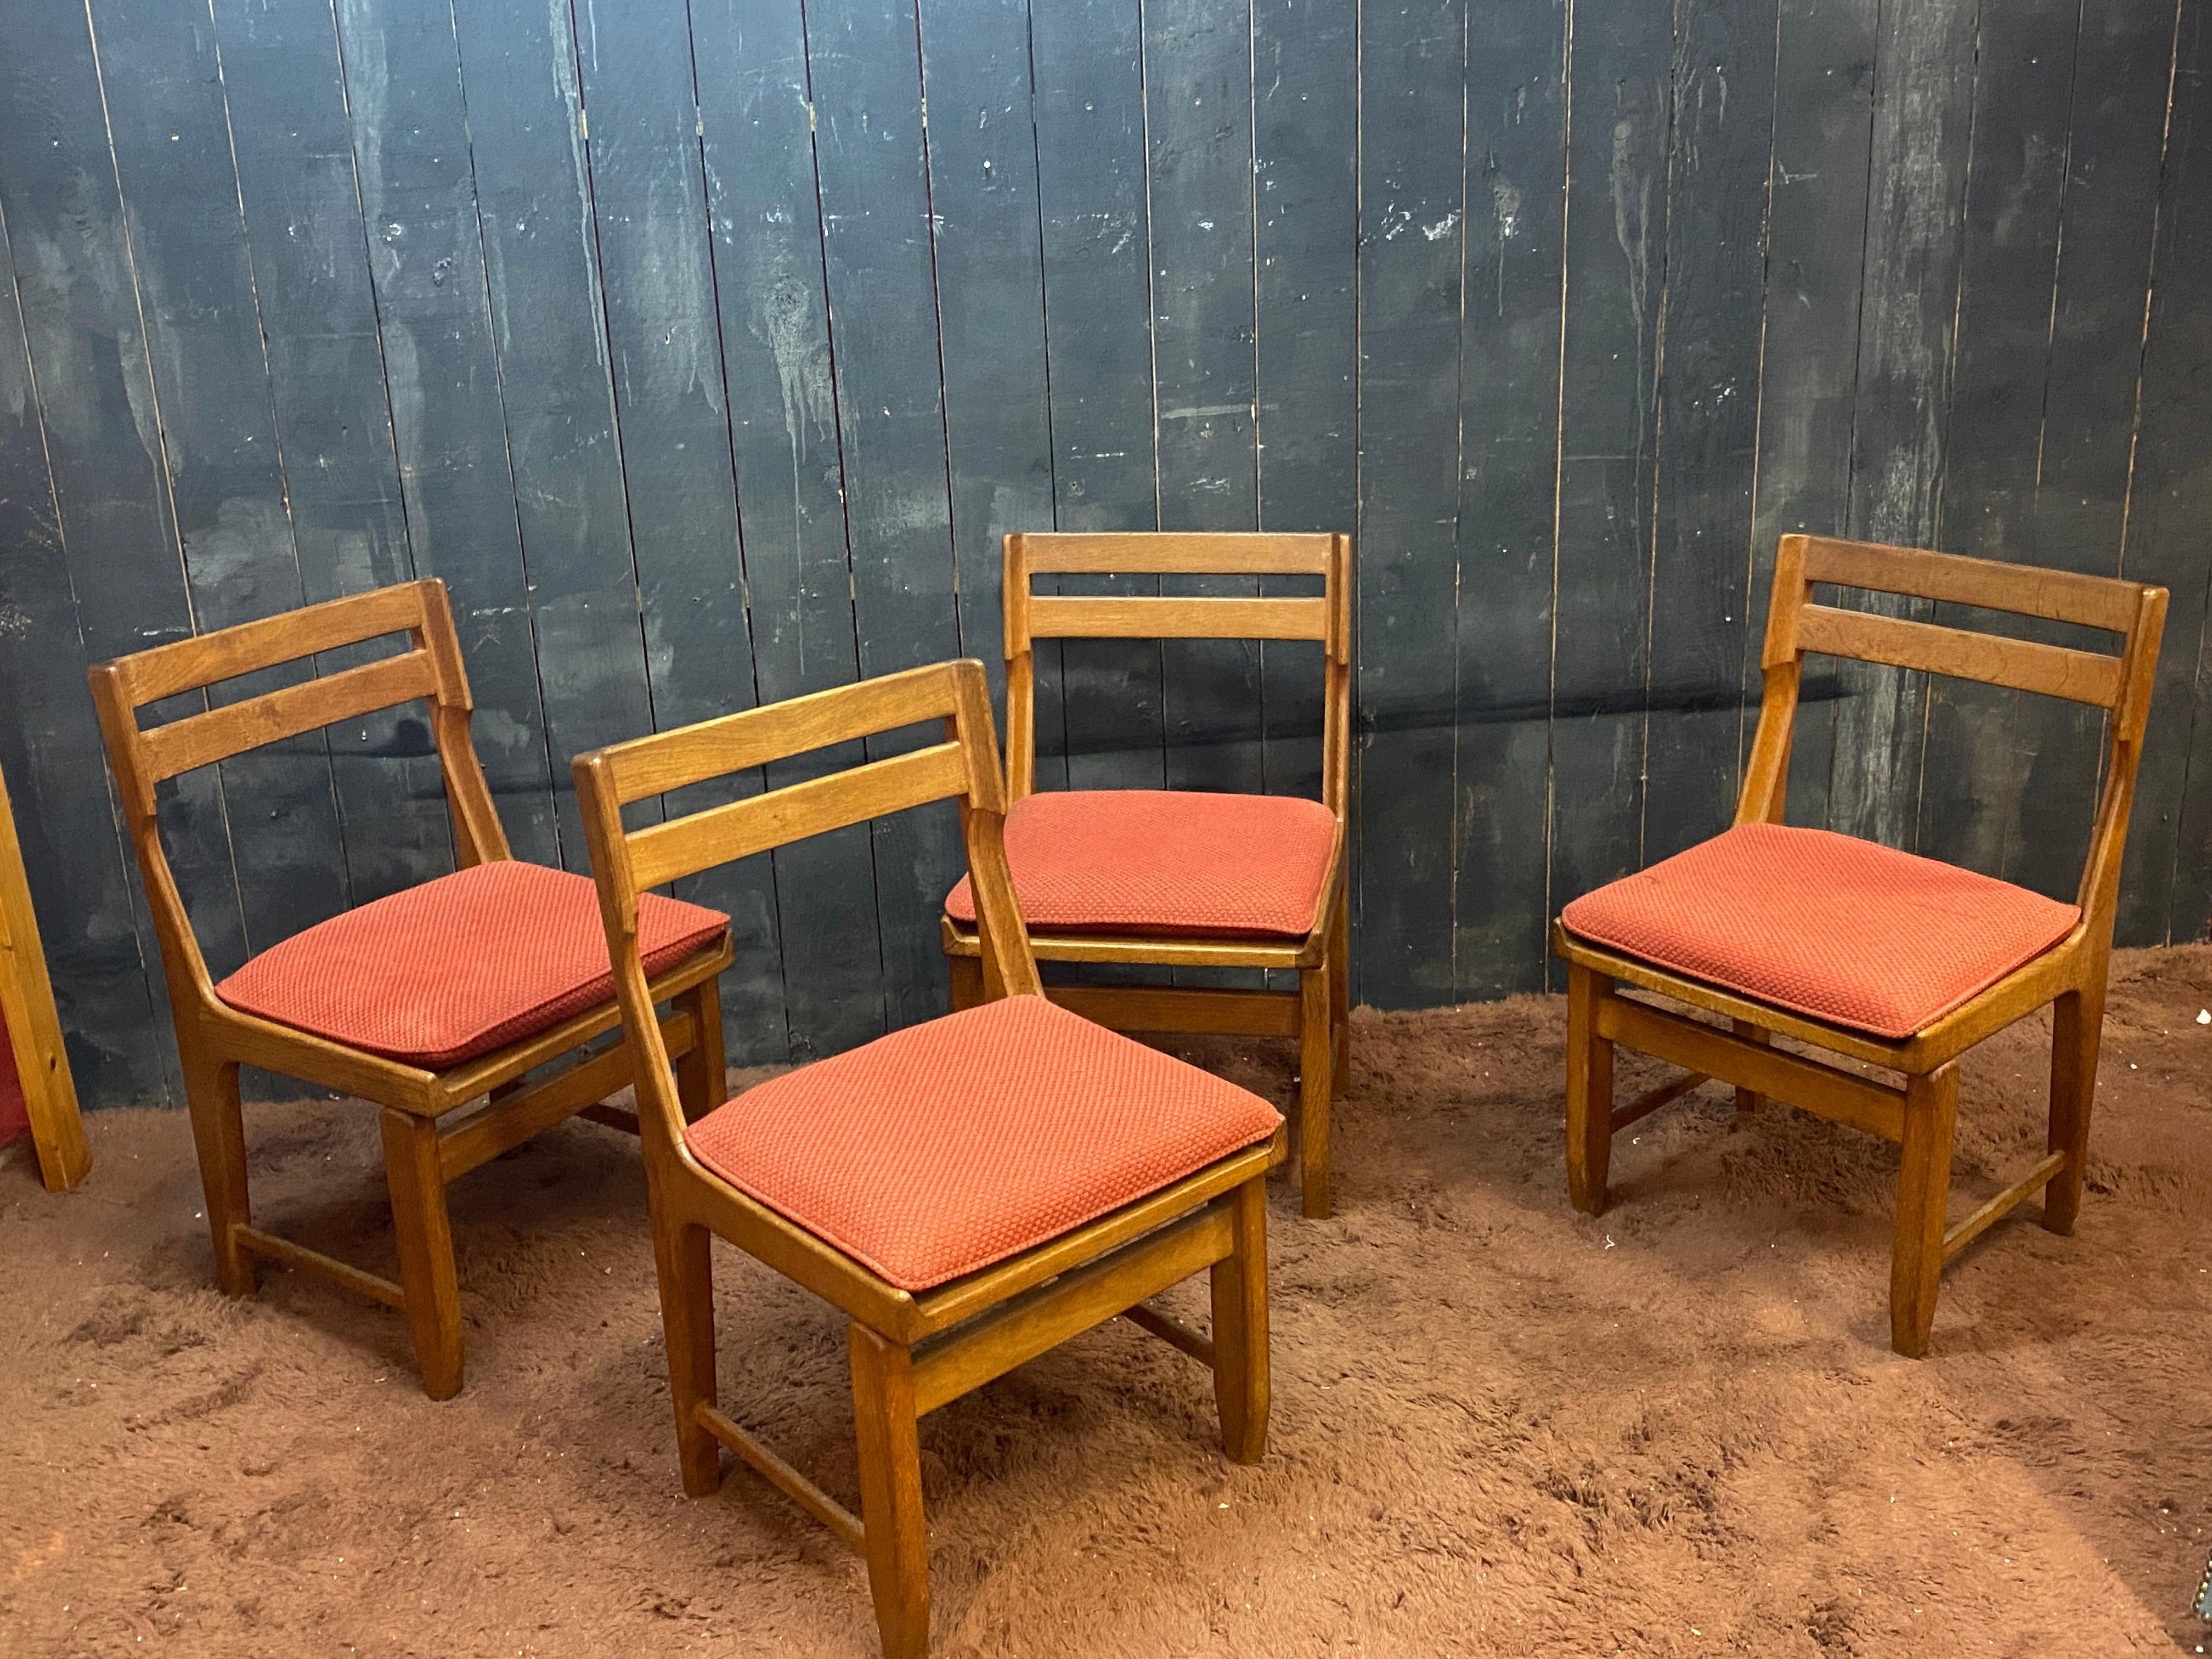 Guillerme et Chambron SET OF 4 chairs Edition Votre Maison, um 1970.
Das Holz ist in gutem Zustand.
verblasster Stoff

Möglichkeit, insgesamt 12 Stühle zu haben, Patina und verschiedene Stoffe